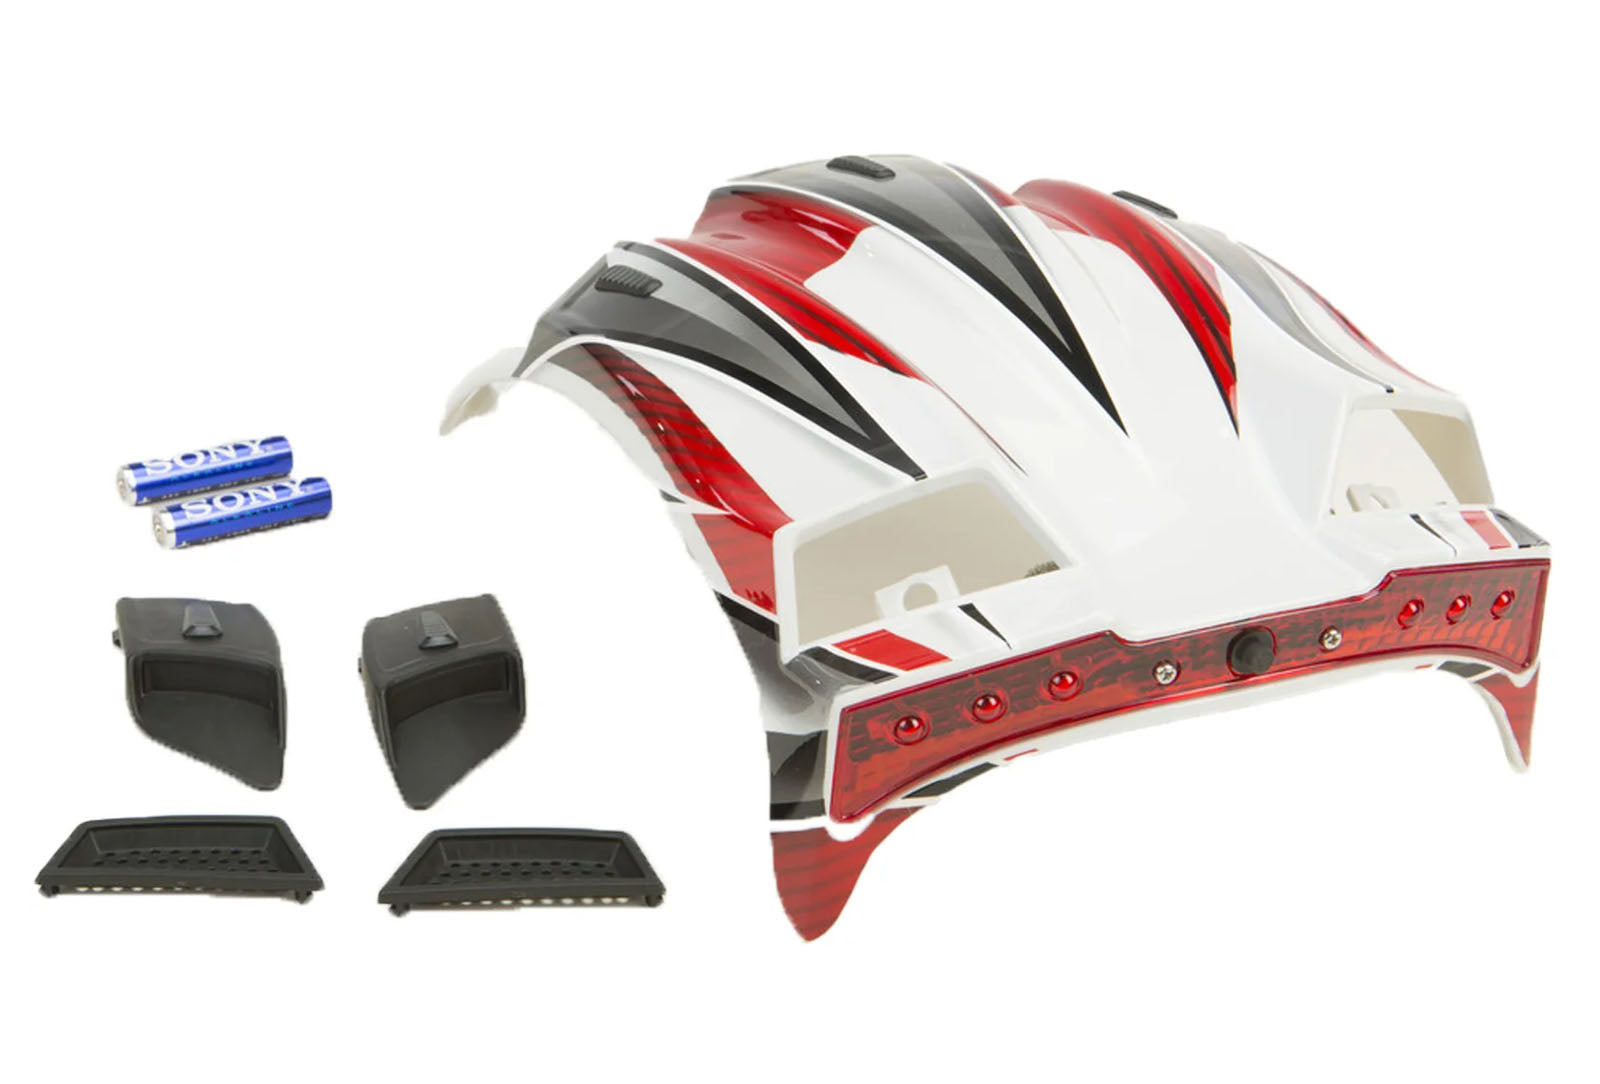 GMAX Top Vent Max Helmet Accessories